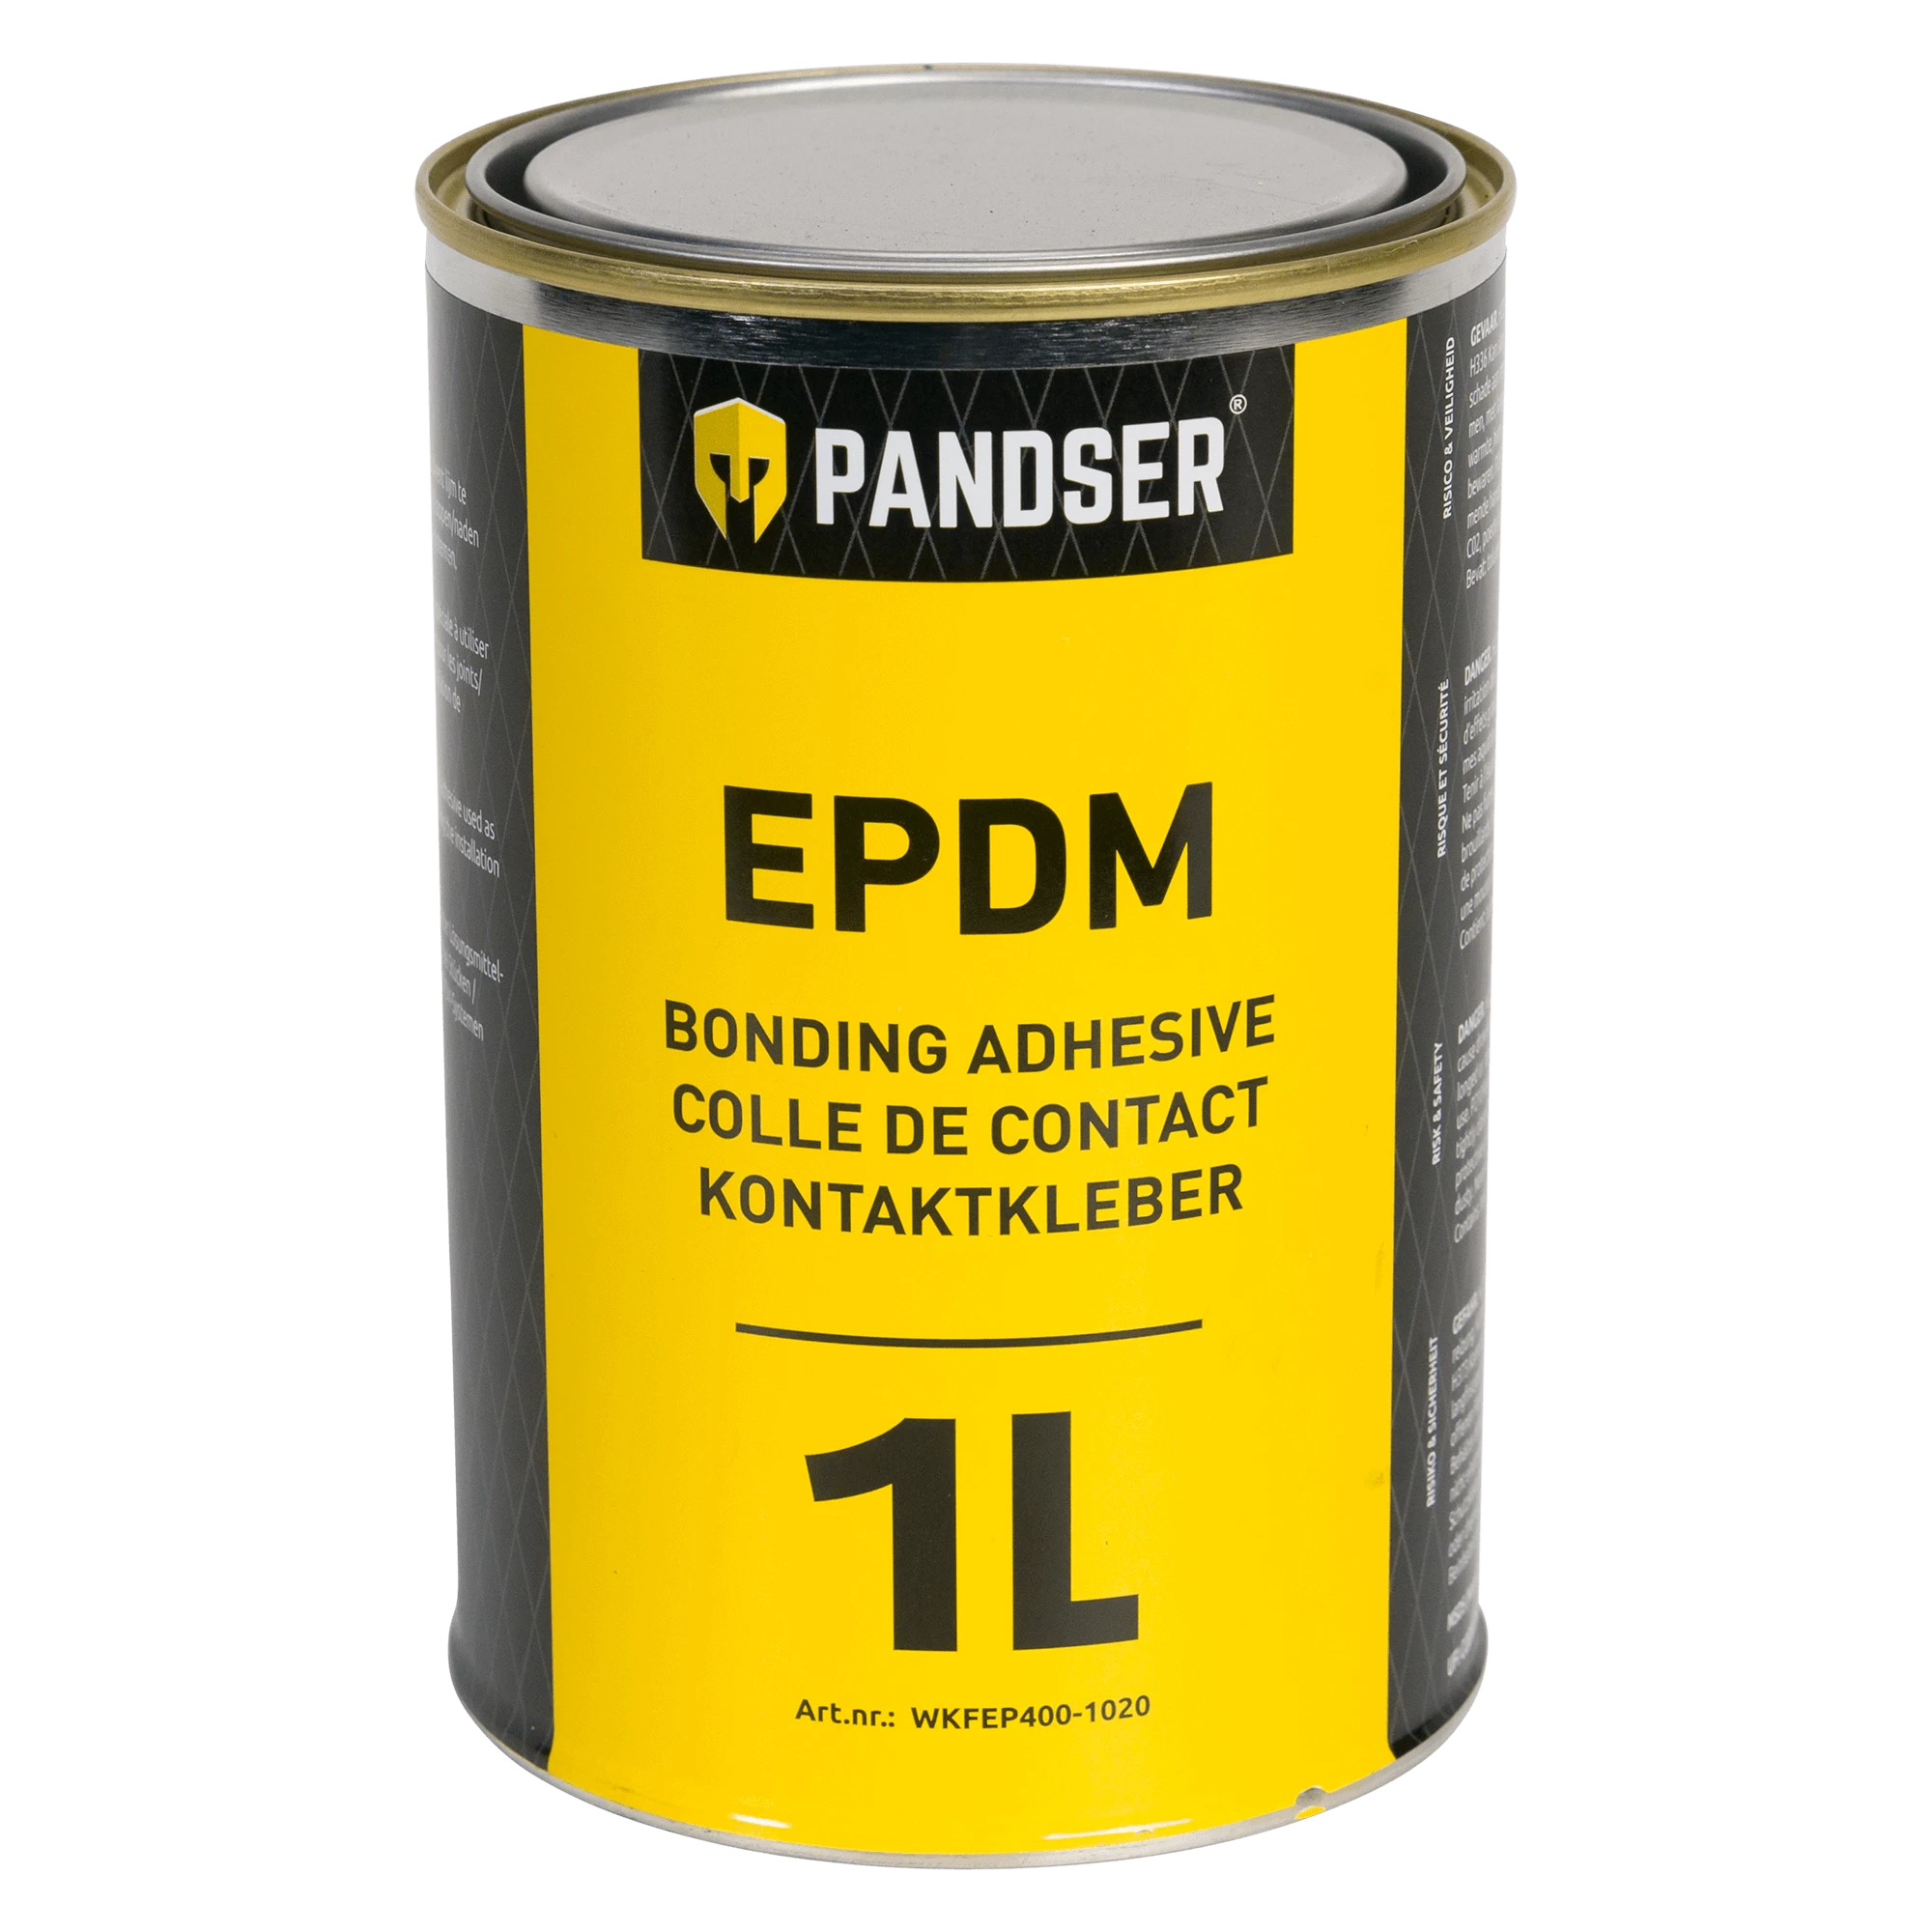 EPDM bonding adhesive 1 liter